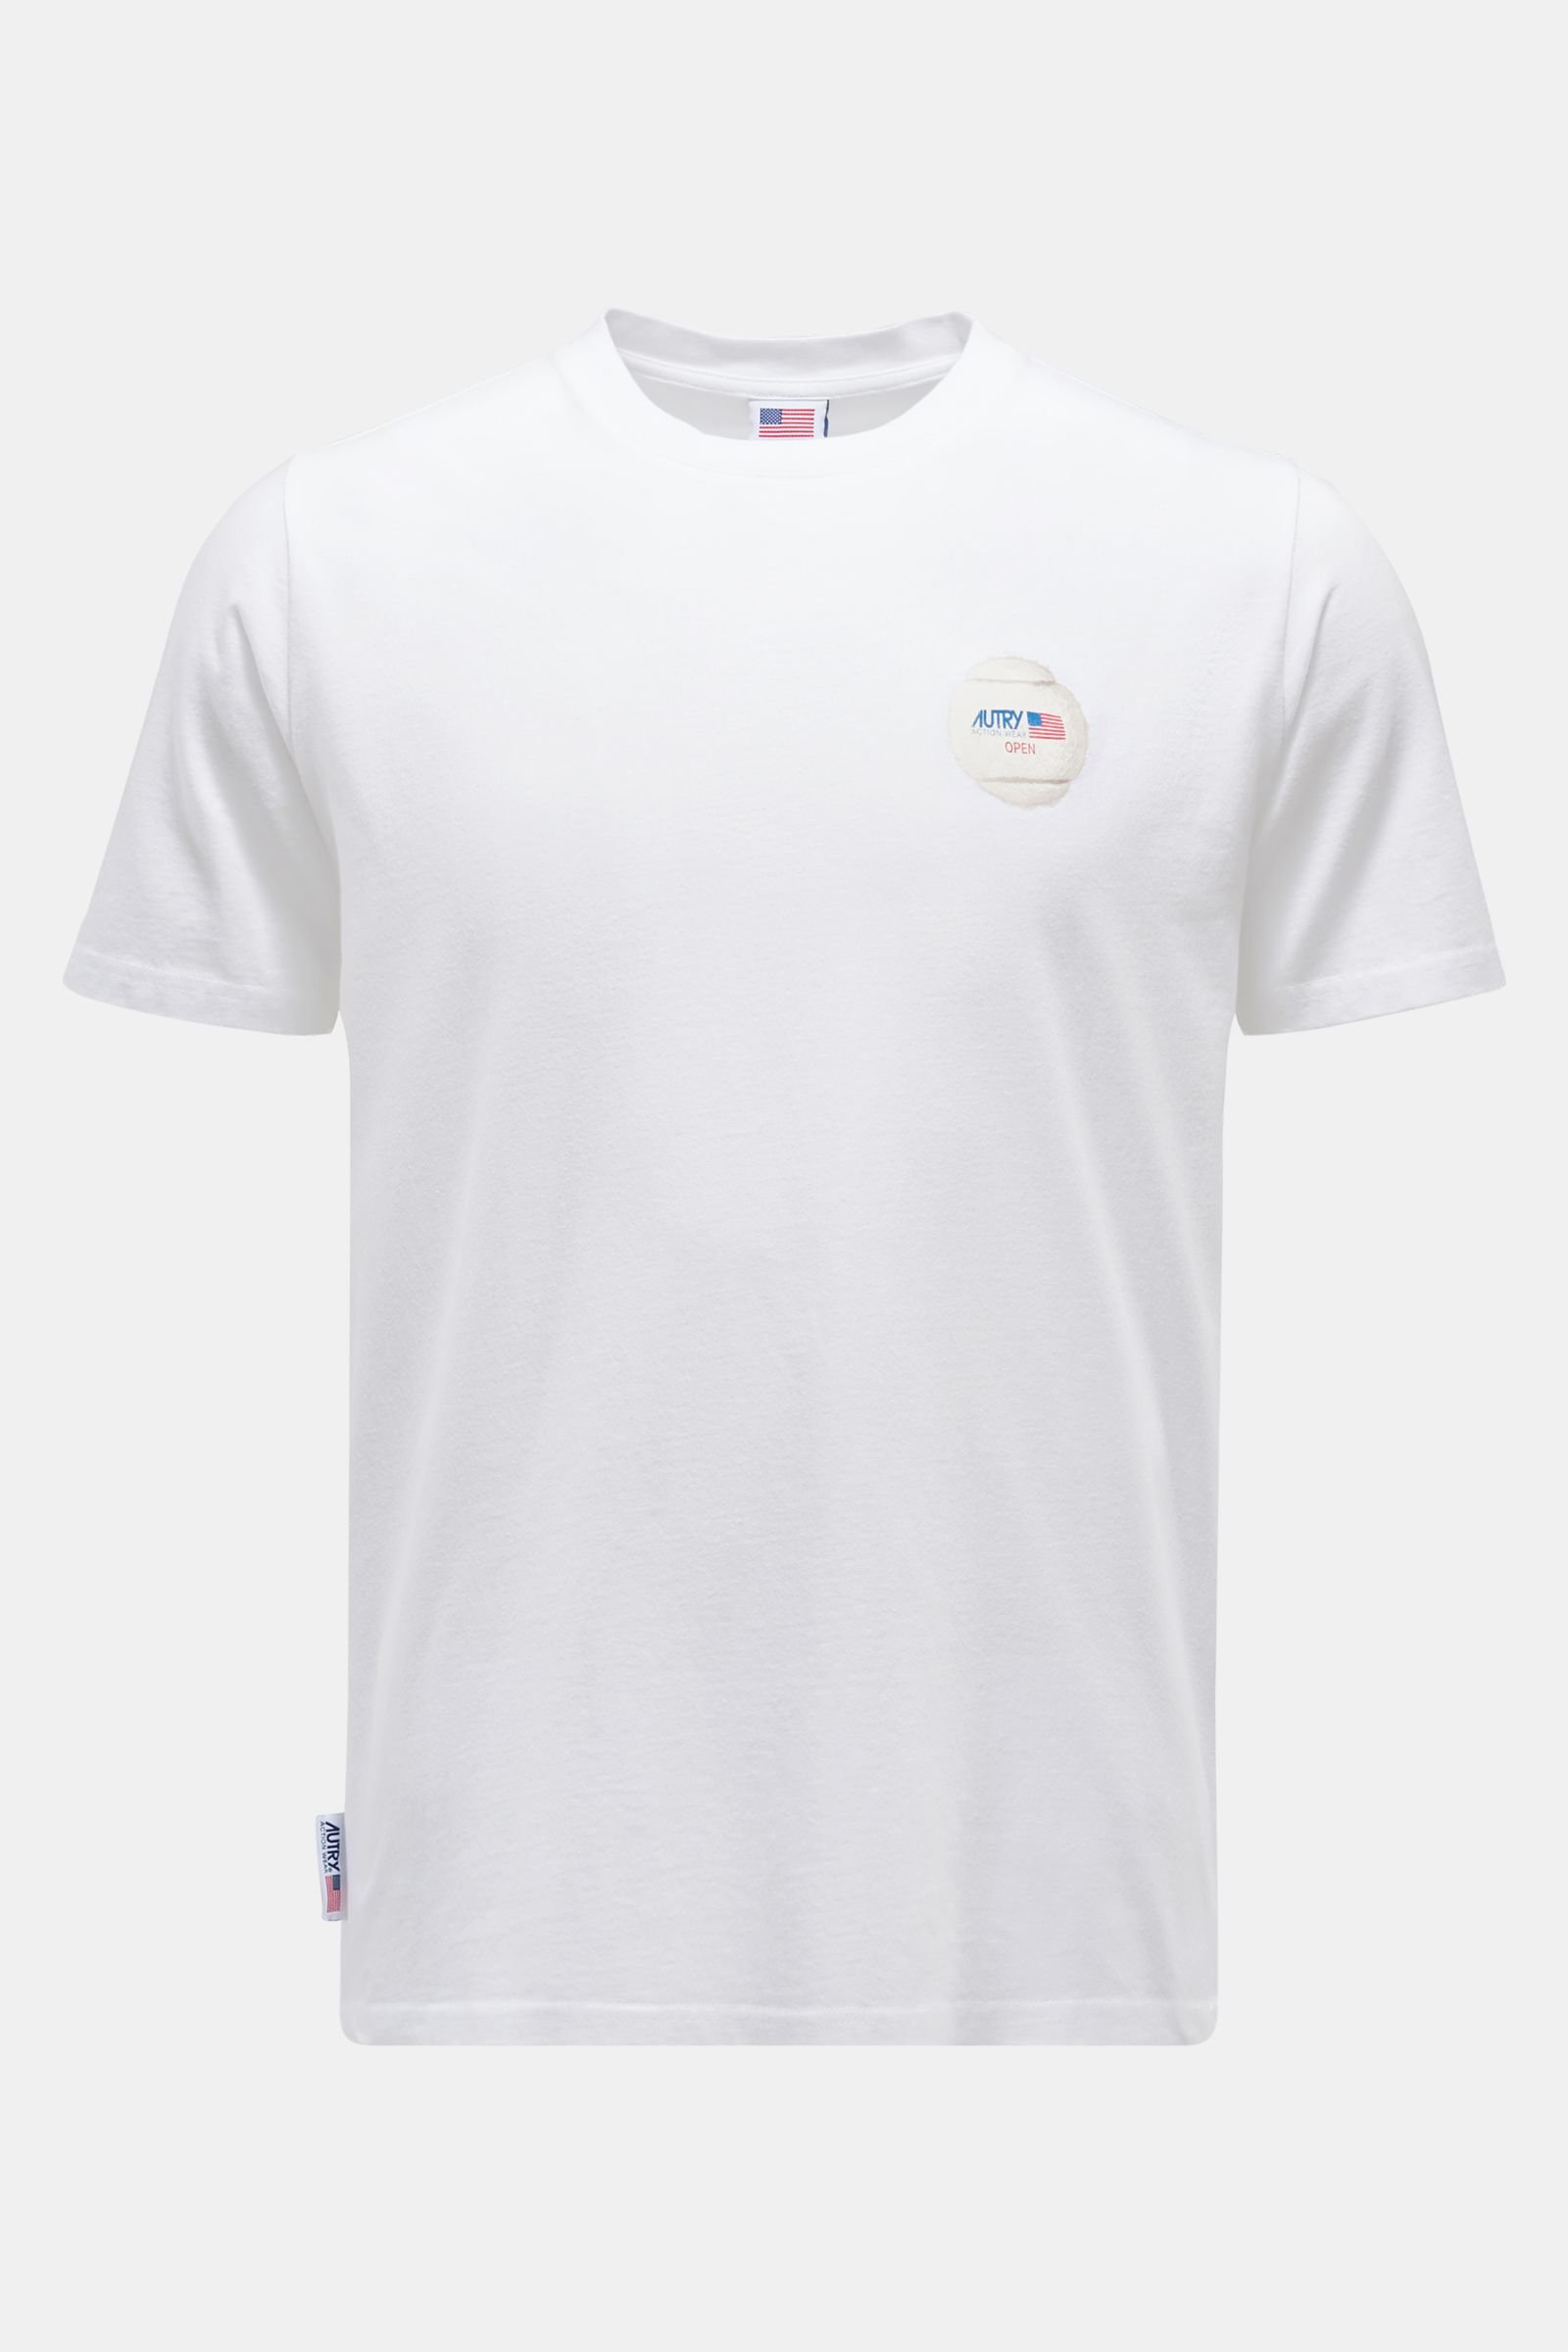 Rundhals-T-Shirt weiß 